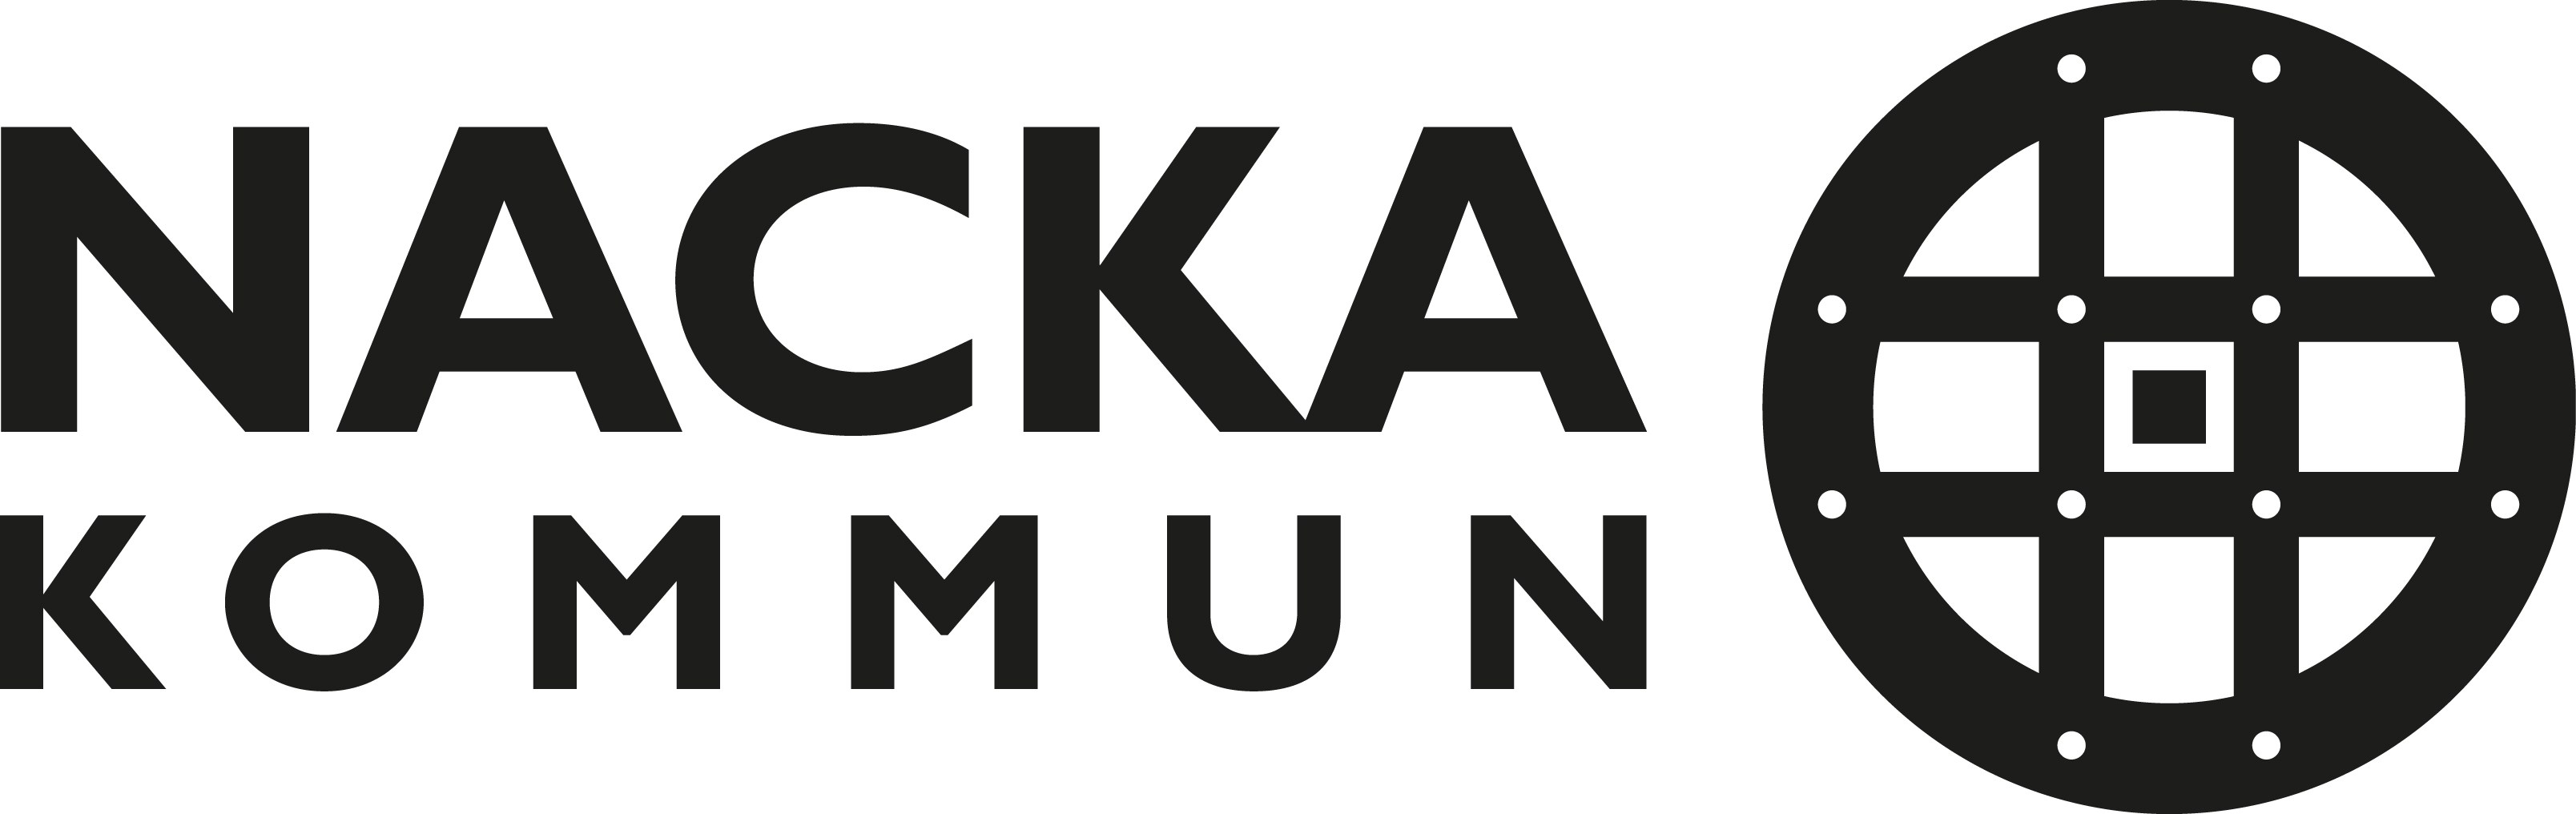 Nacka kommuns logotyp